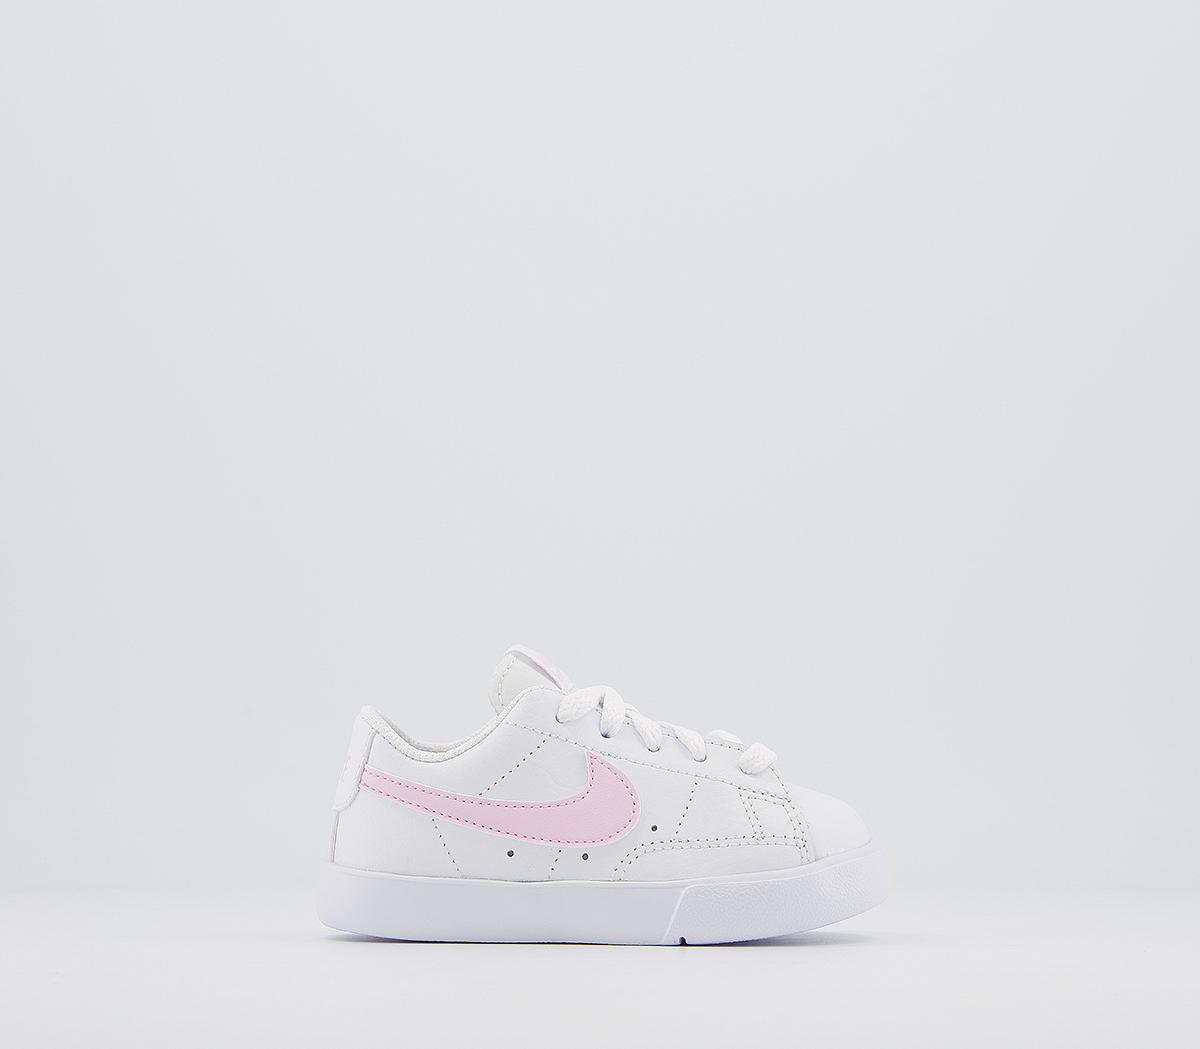 NikeBlazer Low Infant TrainersWhite Pink Foam